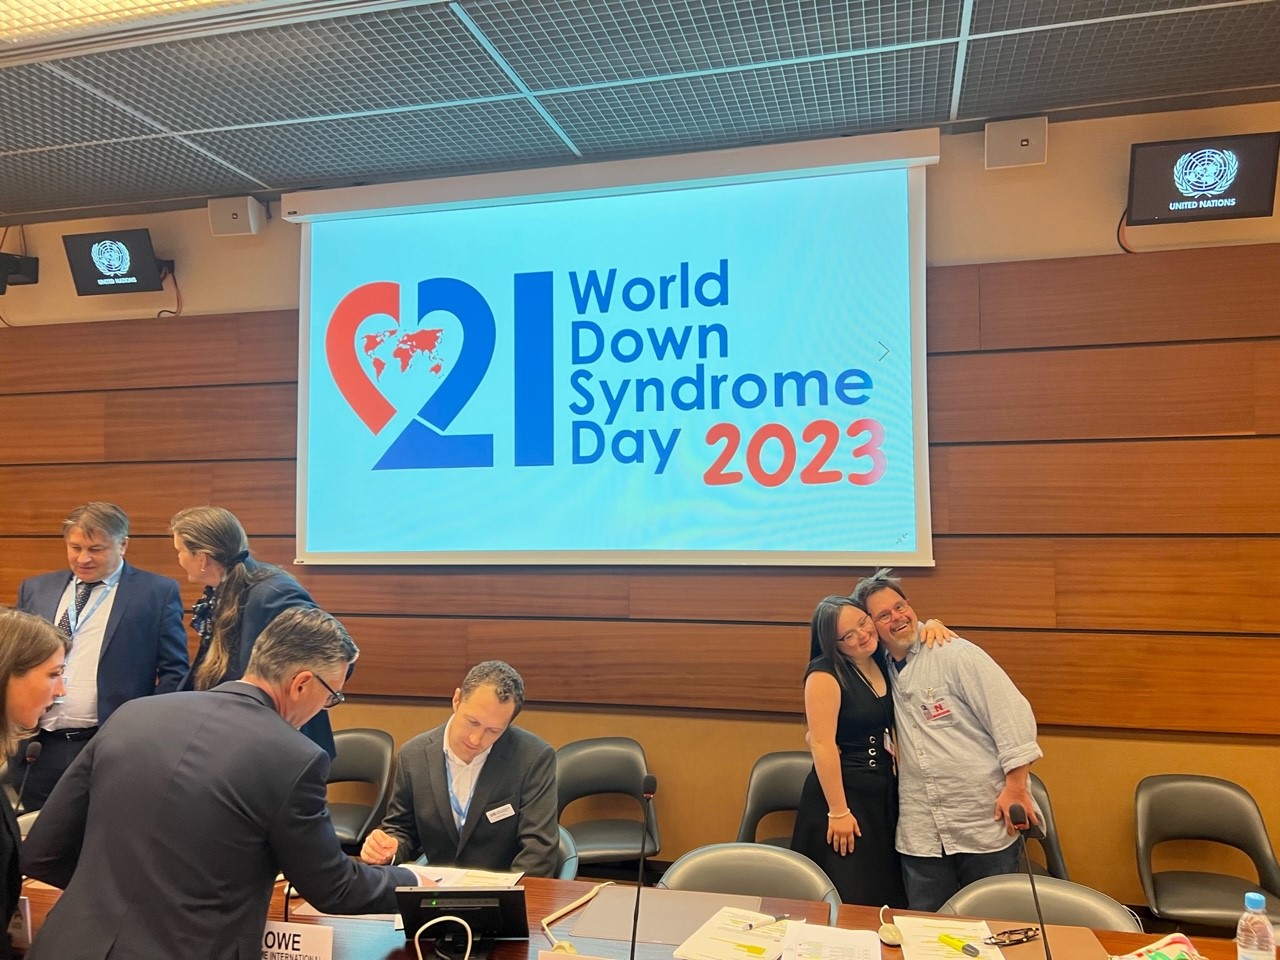 Mehrere Personen in einem grossen Saal mit einer Projektion des Logos World Down Syndrom Day im Hintergrund.